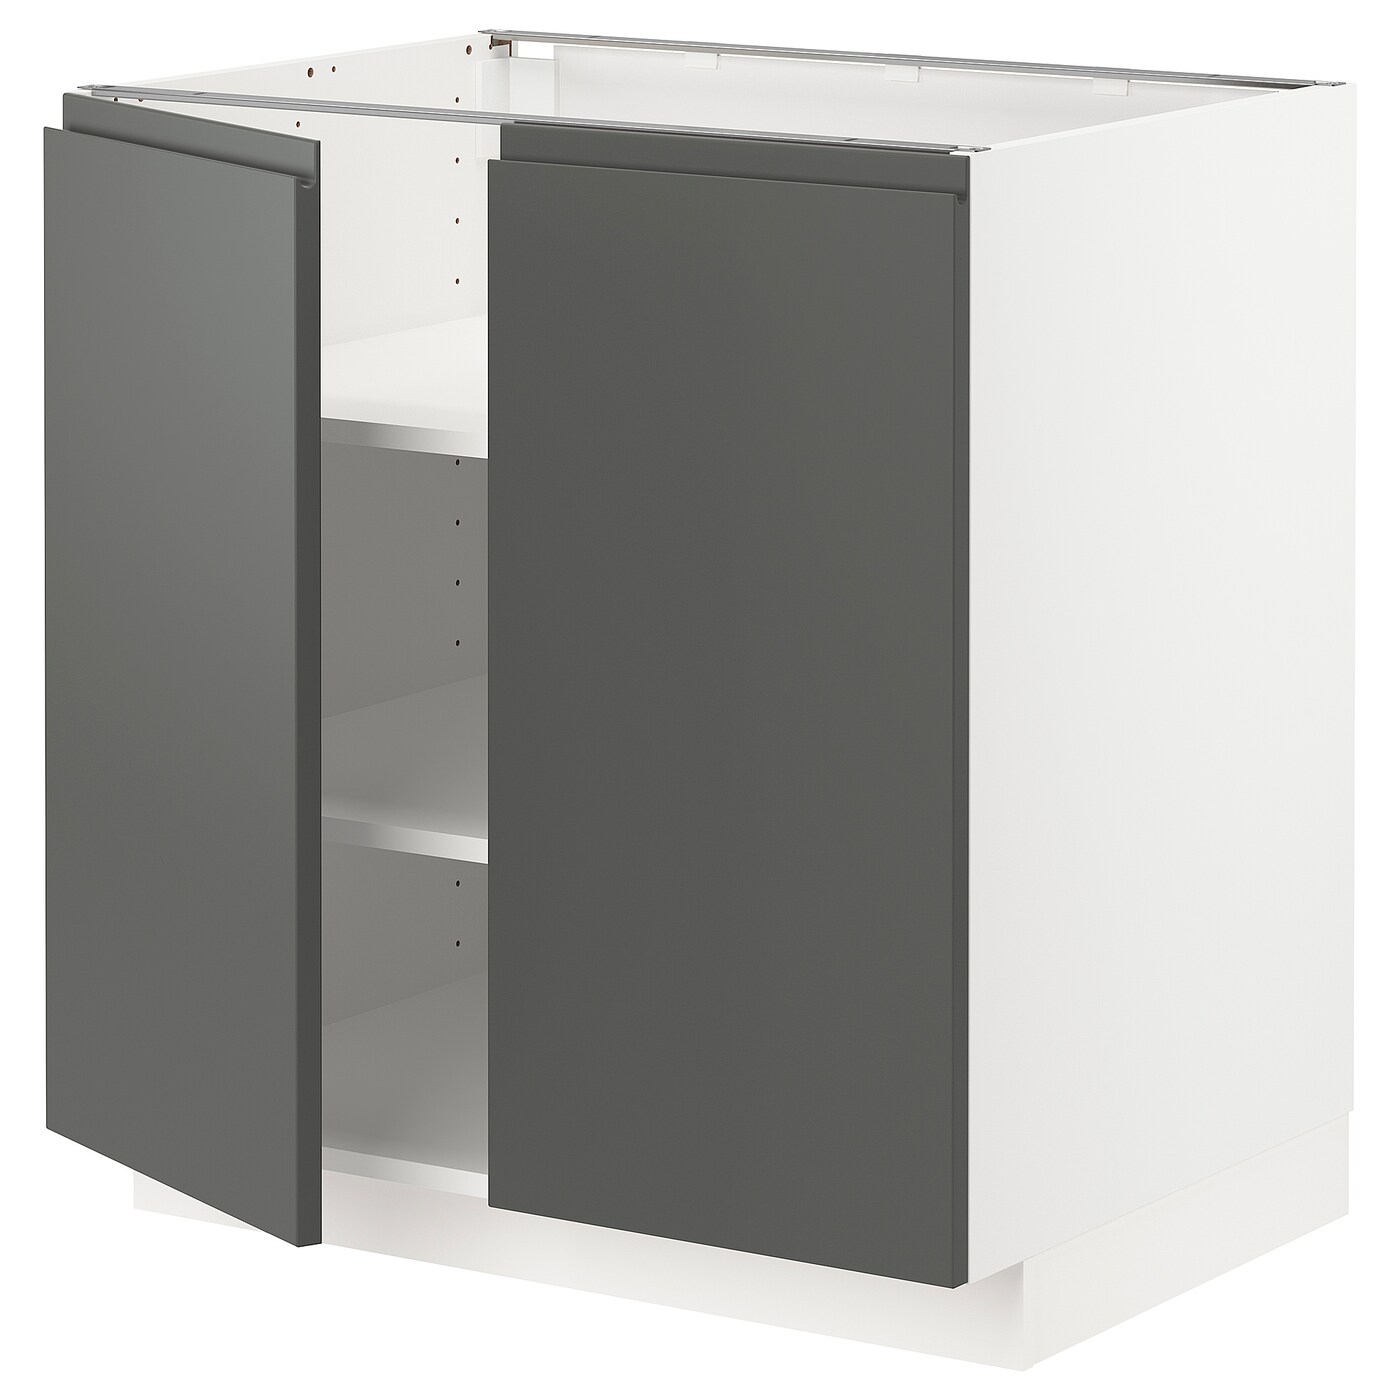 Напольный шкаф - IKEA METOD, 88x62x80см, белый/темно-серый, МЕТОД ИКЕА